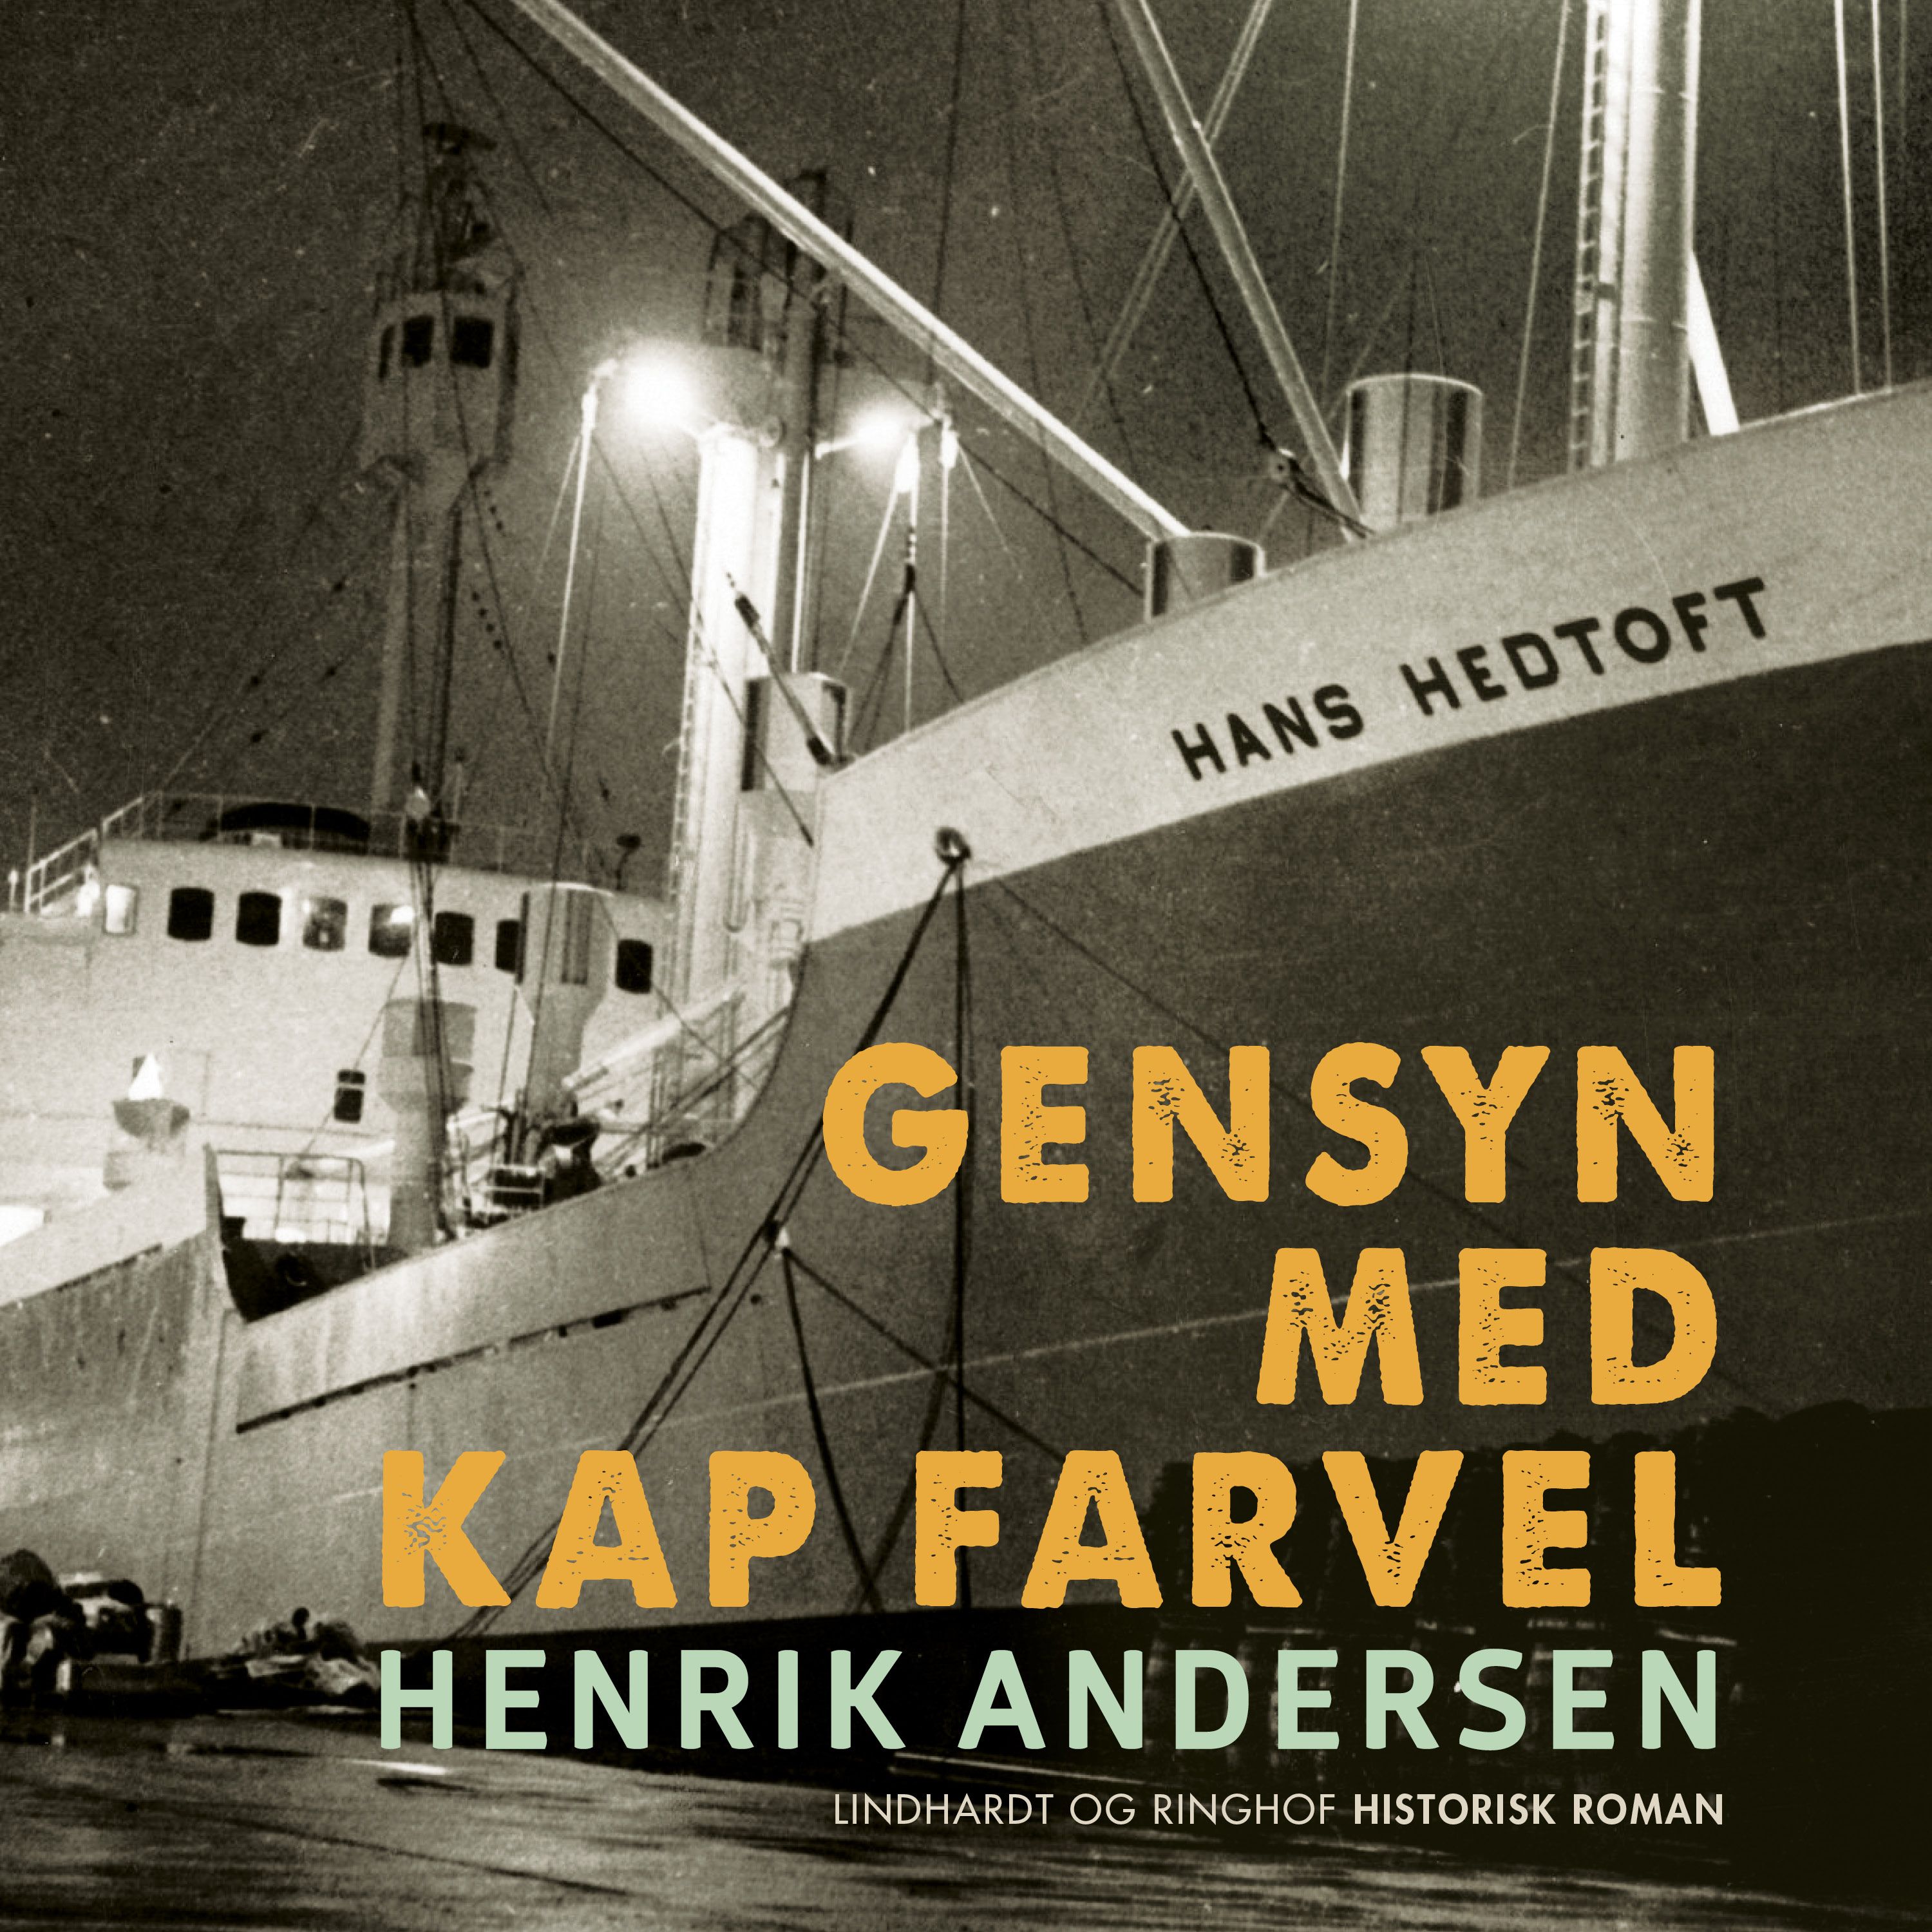 Gensyn med Kap Farvel, ljudbok av Henrik Andersen